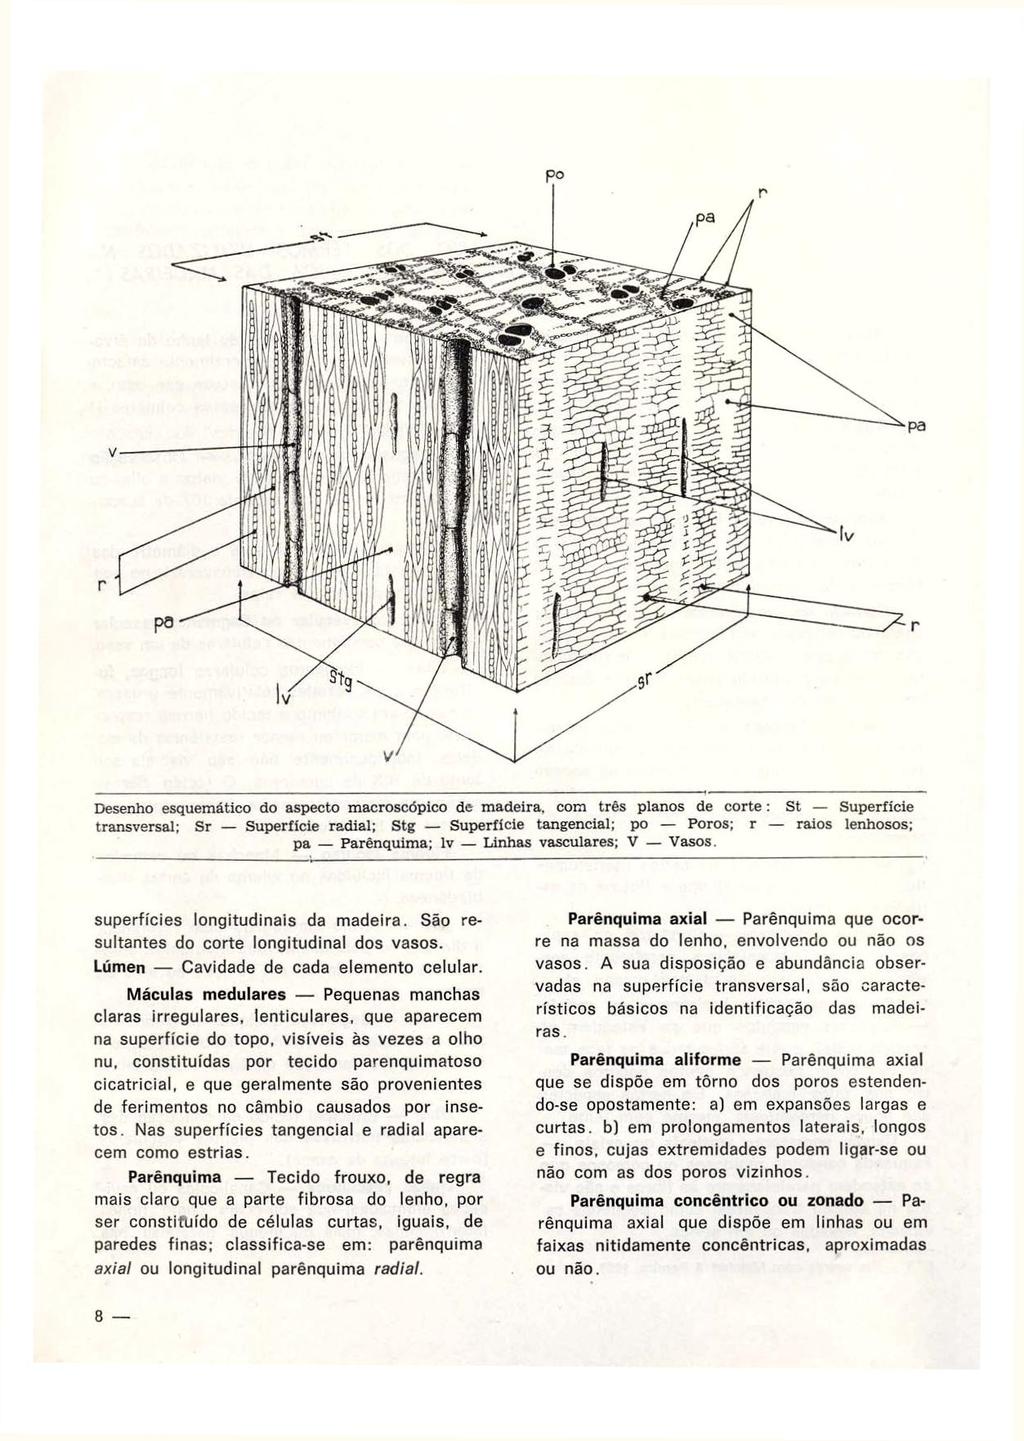 Desenho esquemático do aspecto macroscópico de madeira, com três planos de corte : St Superfície transversal; Sr Superficie radial; Stg Superfície tangencial; po Poros; r raios lenhosos; pa